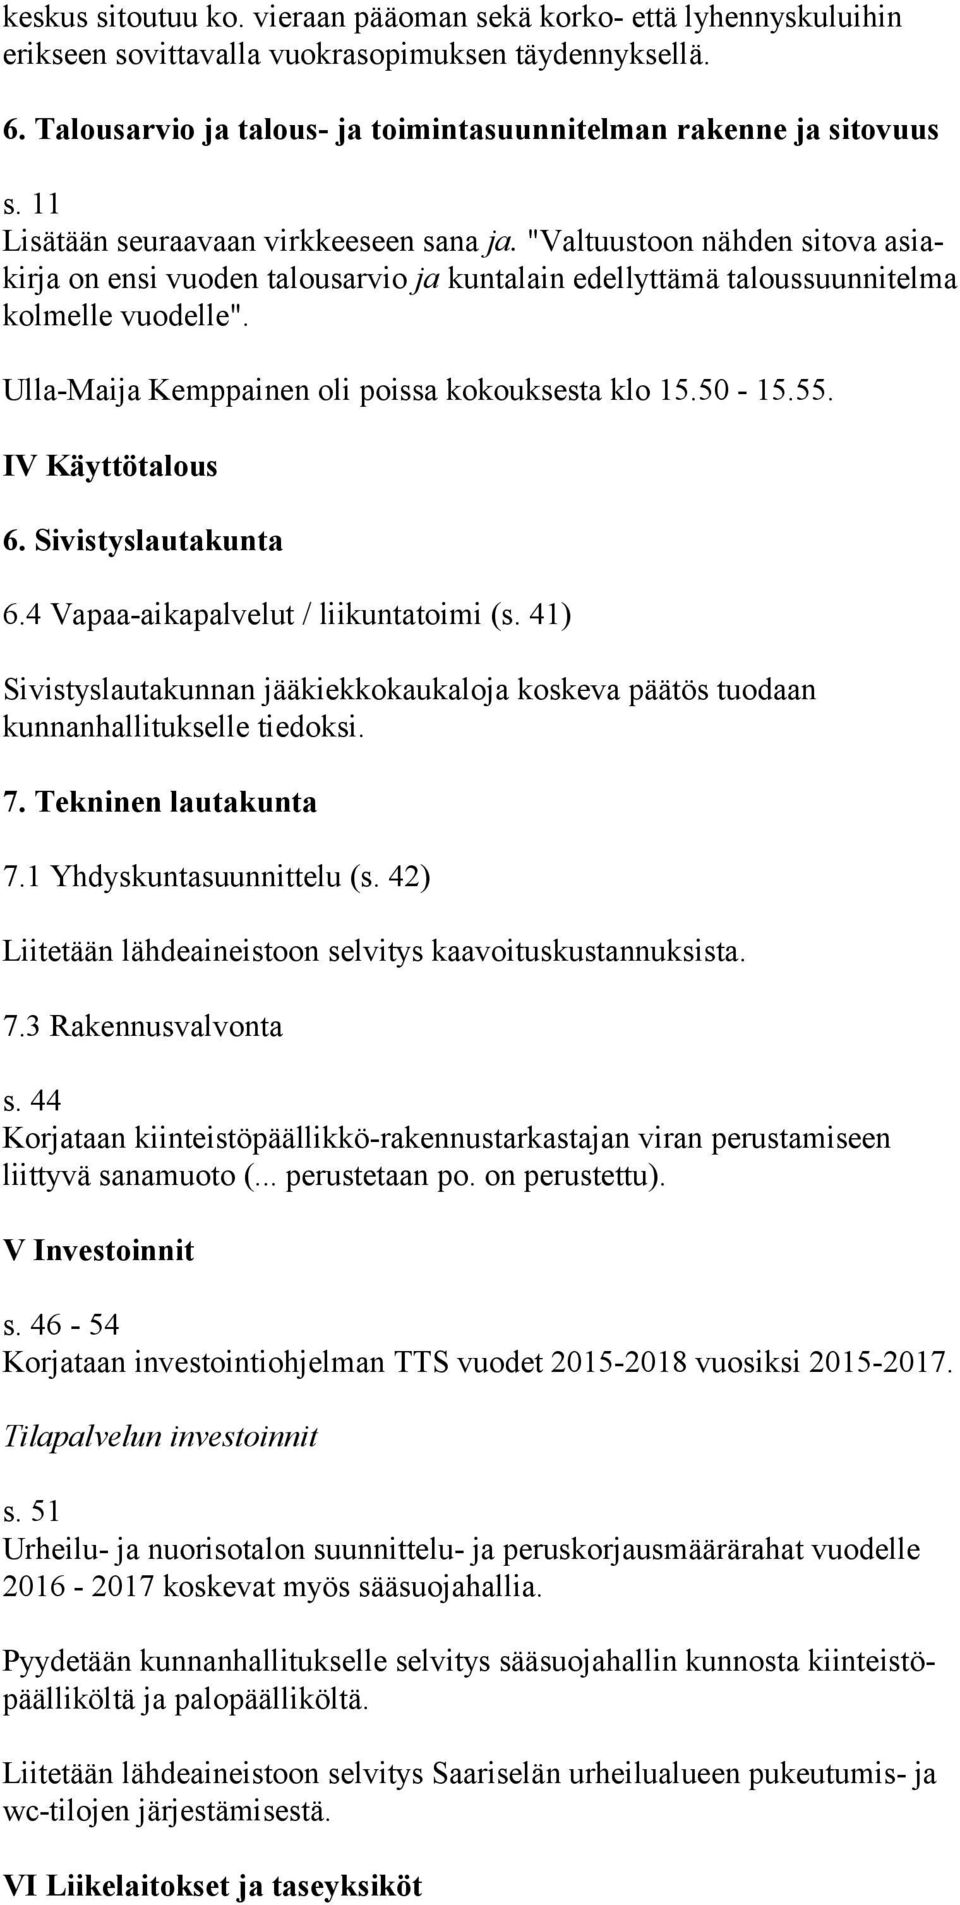 Ulla-Maija Kemppainen oli poissa kokouksesta klo 15.50-15.55. IV Käyttötalous 6. Sivistyslautakunta 6.4 Vapaa-aikapalvelut / liikuntatoimi (s.